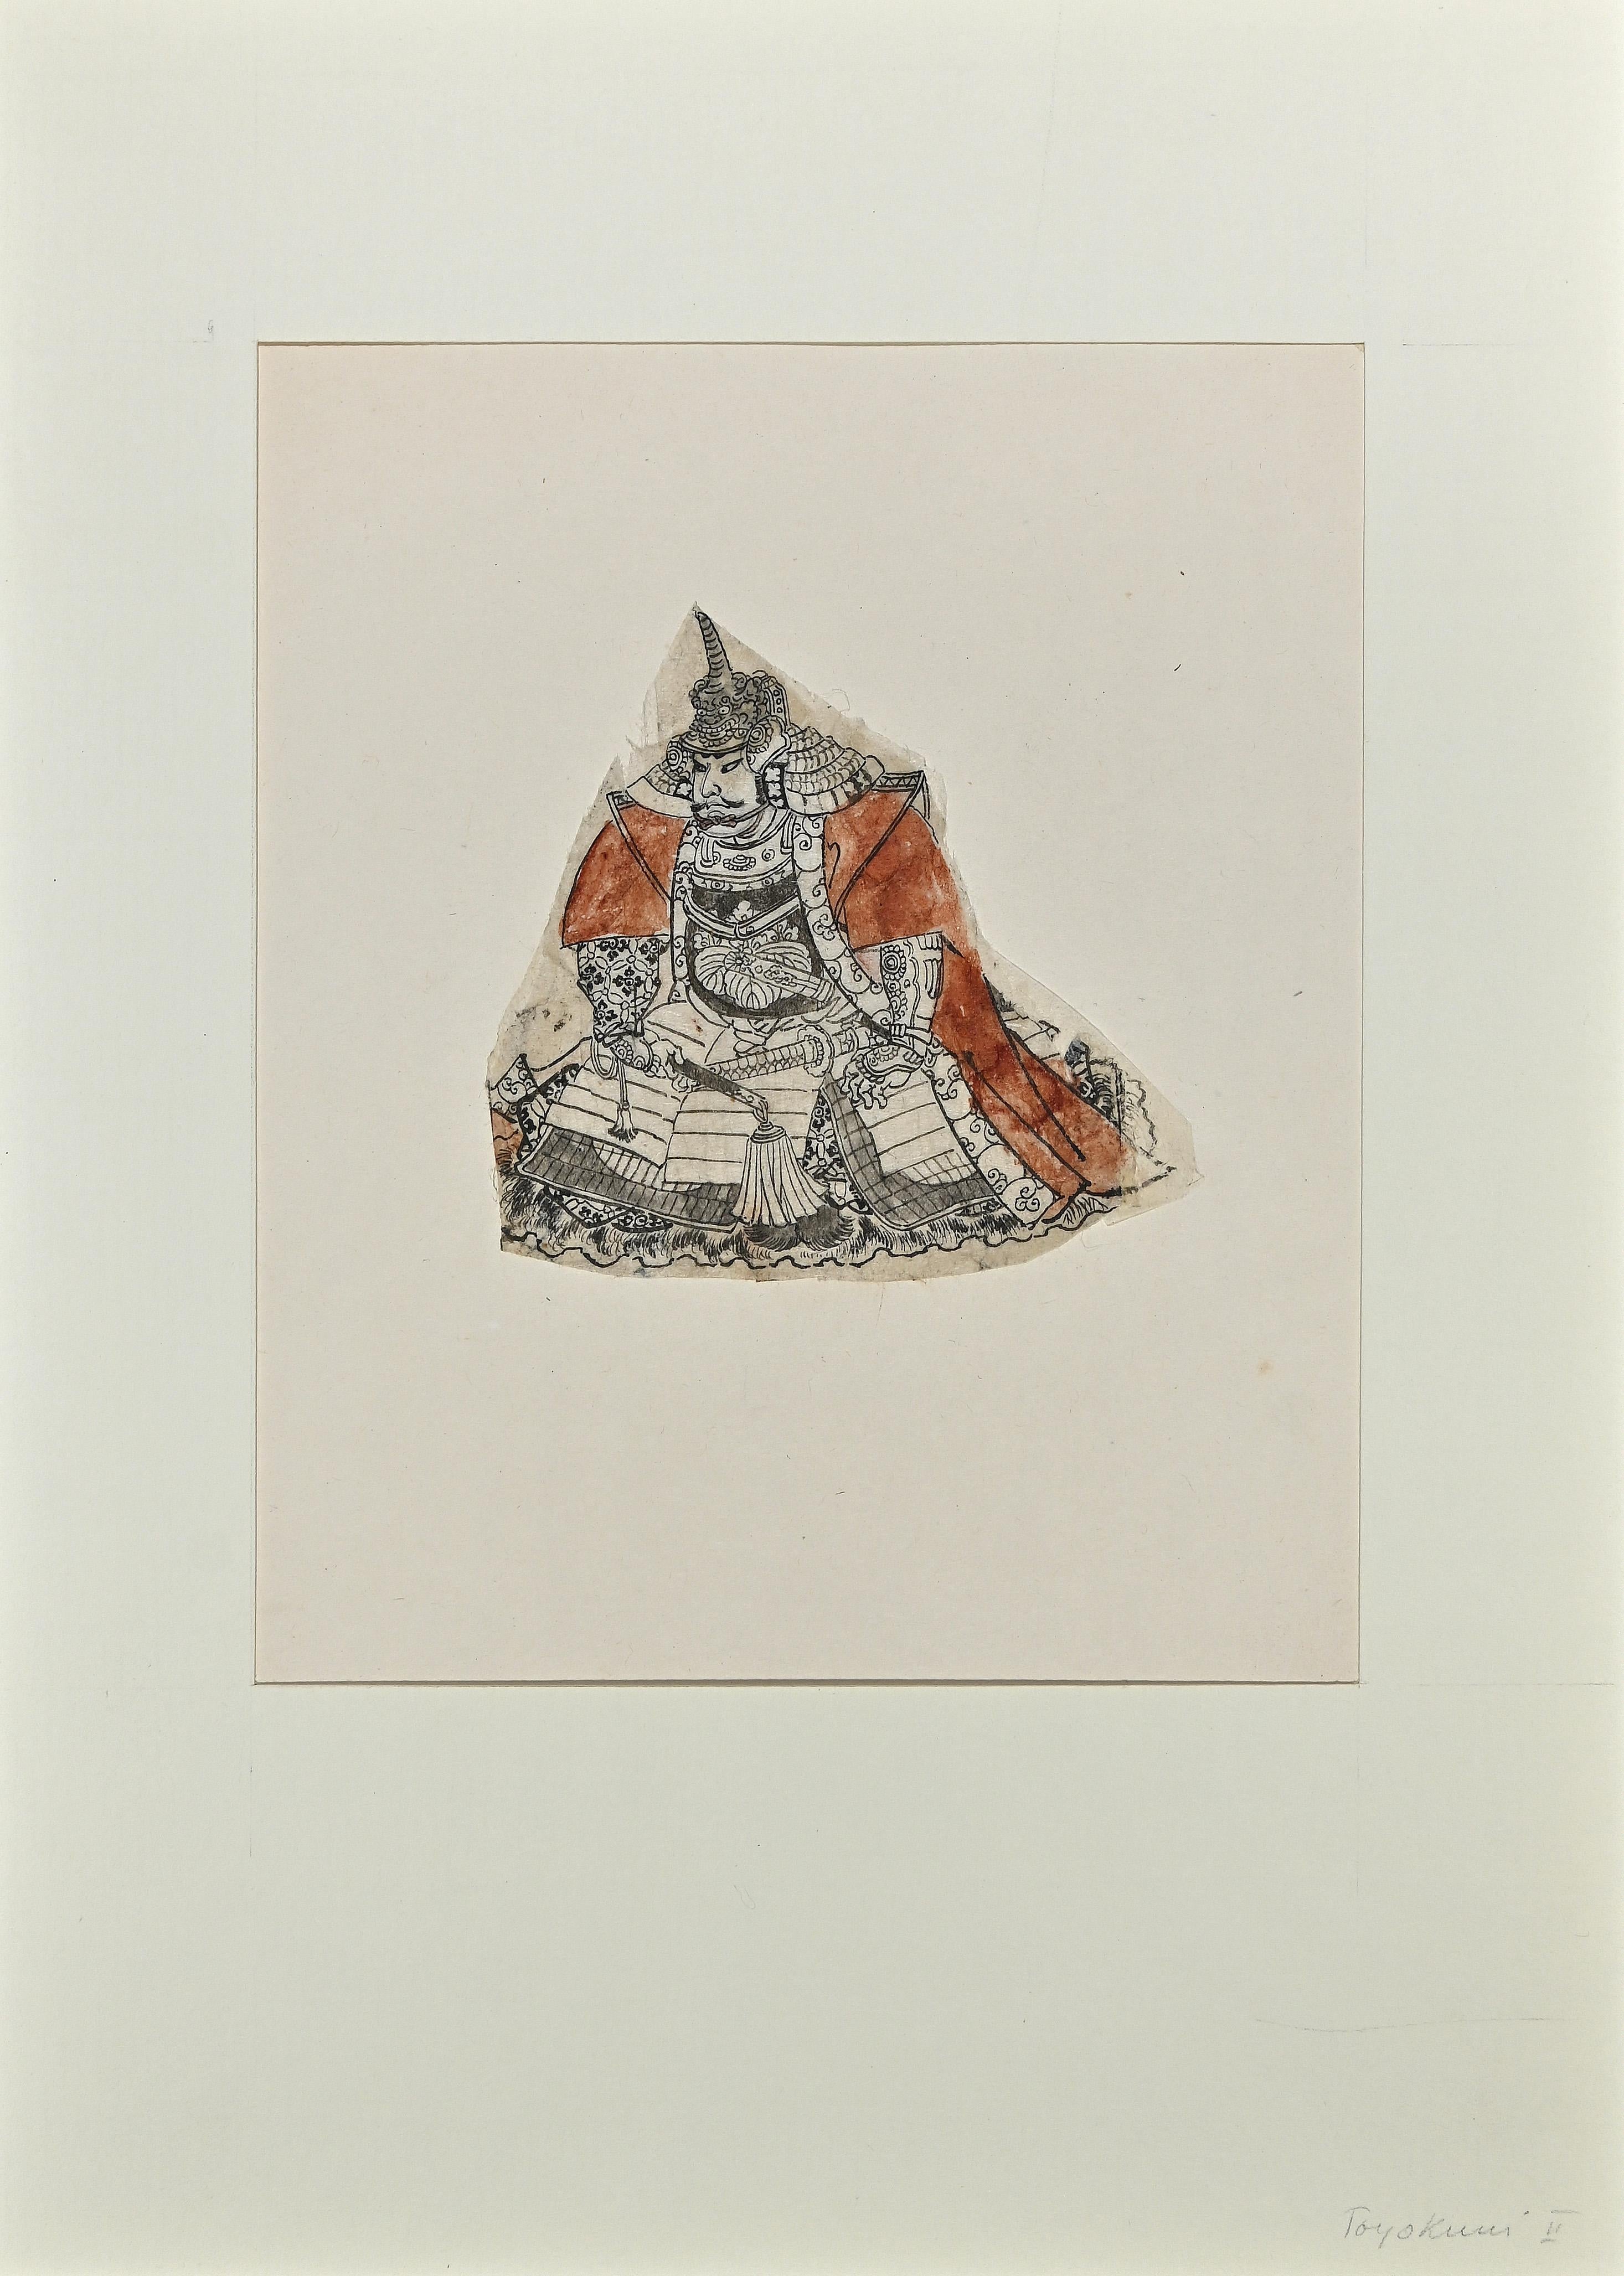 L'Homme au dragon est une gravure sur bois colorée à la main, réalisée par le grand maître de l'estampe ukiyo-e, Utagawa Toyokuni II (1769-1825).

Avec des couleurs vives (sur papier bruni, collé sur carton blanc), et une maîtrise de la technique